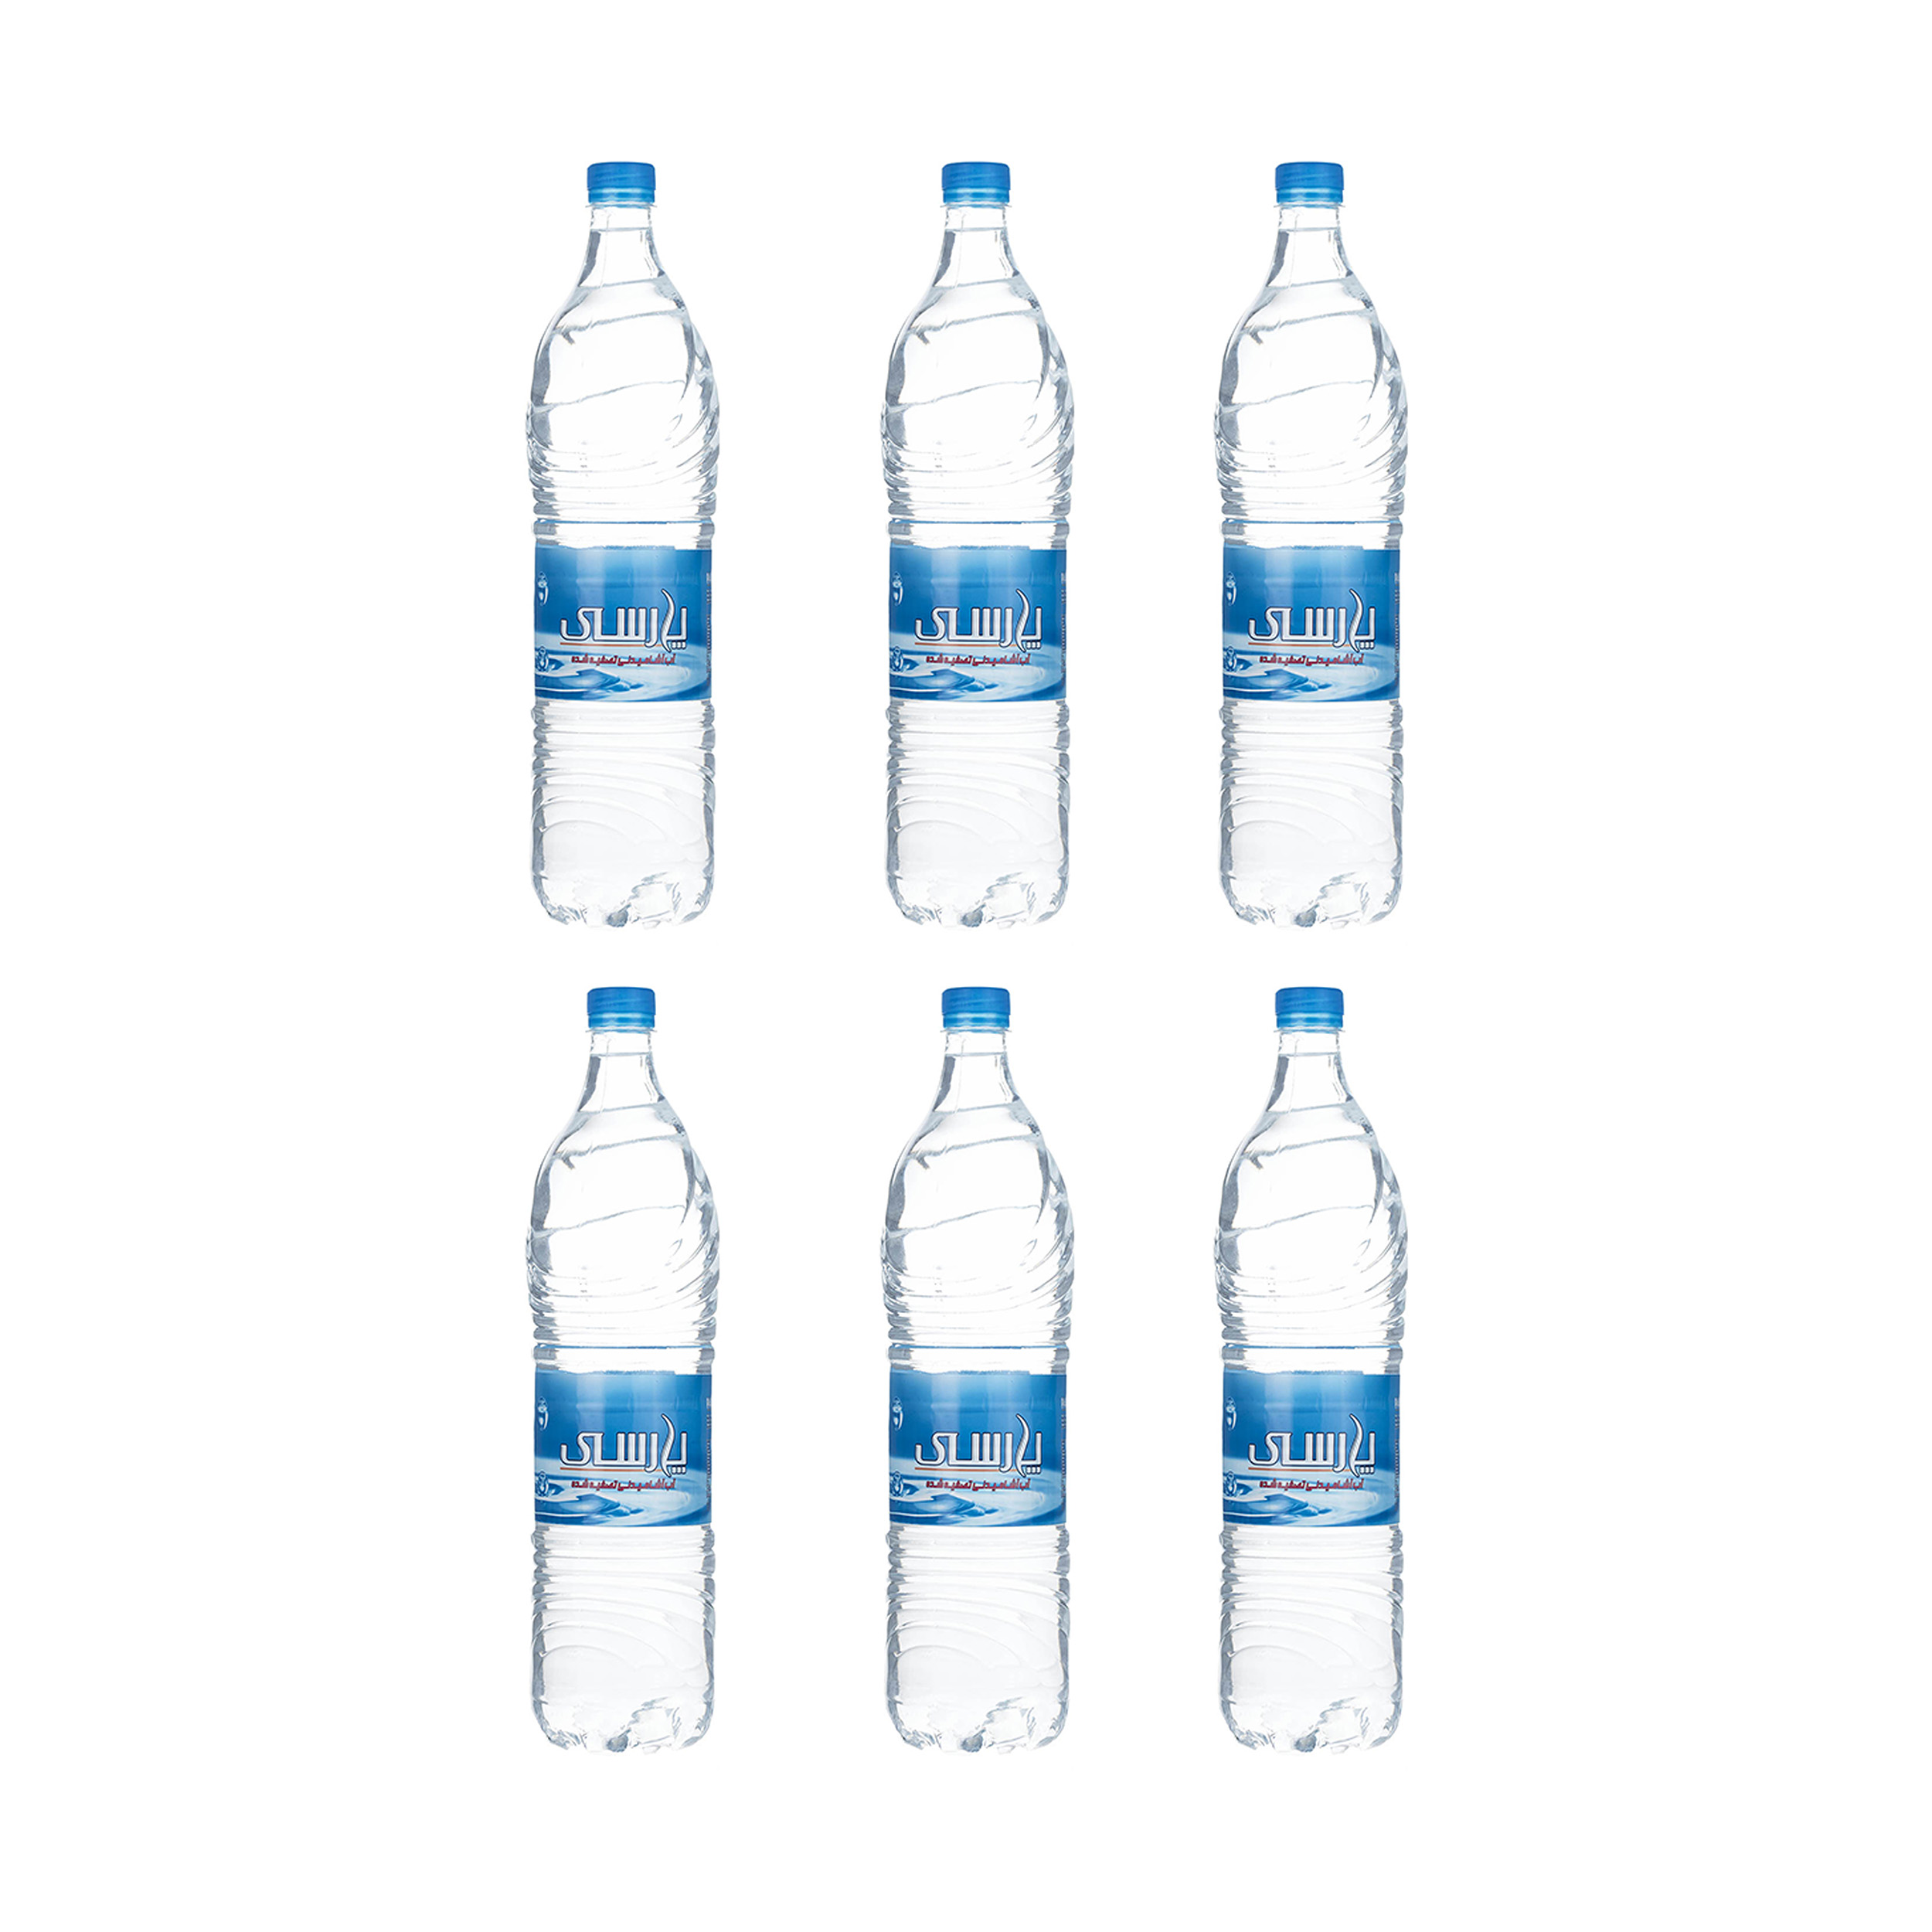 آب آشامیدنی تصفیه شده پارسی مقدار 1.5 لیتر بسته 6 عددی